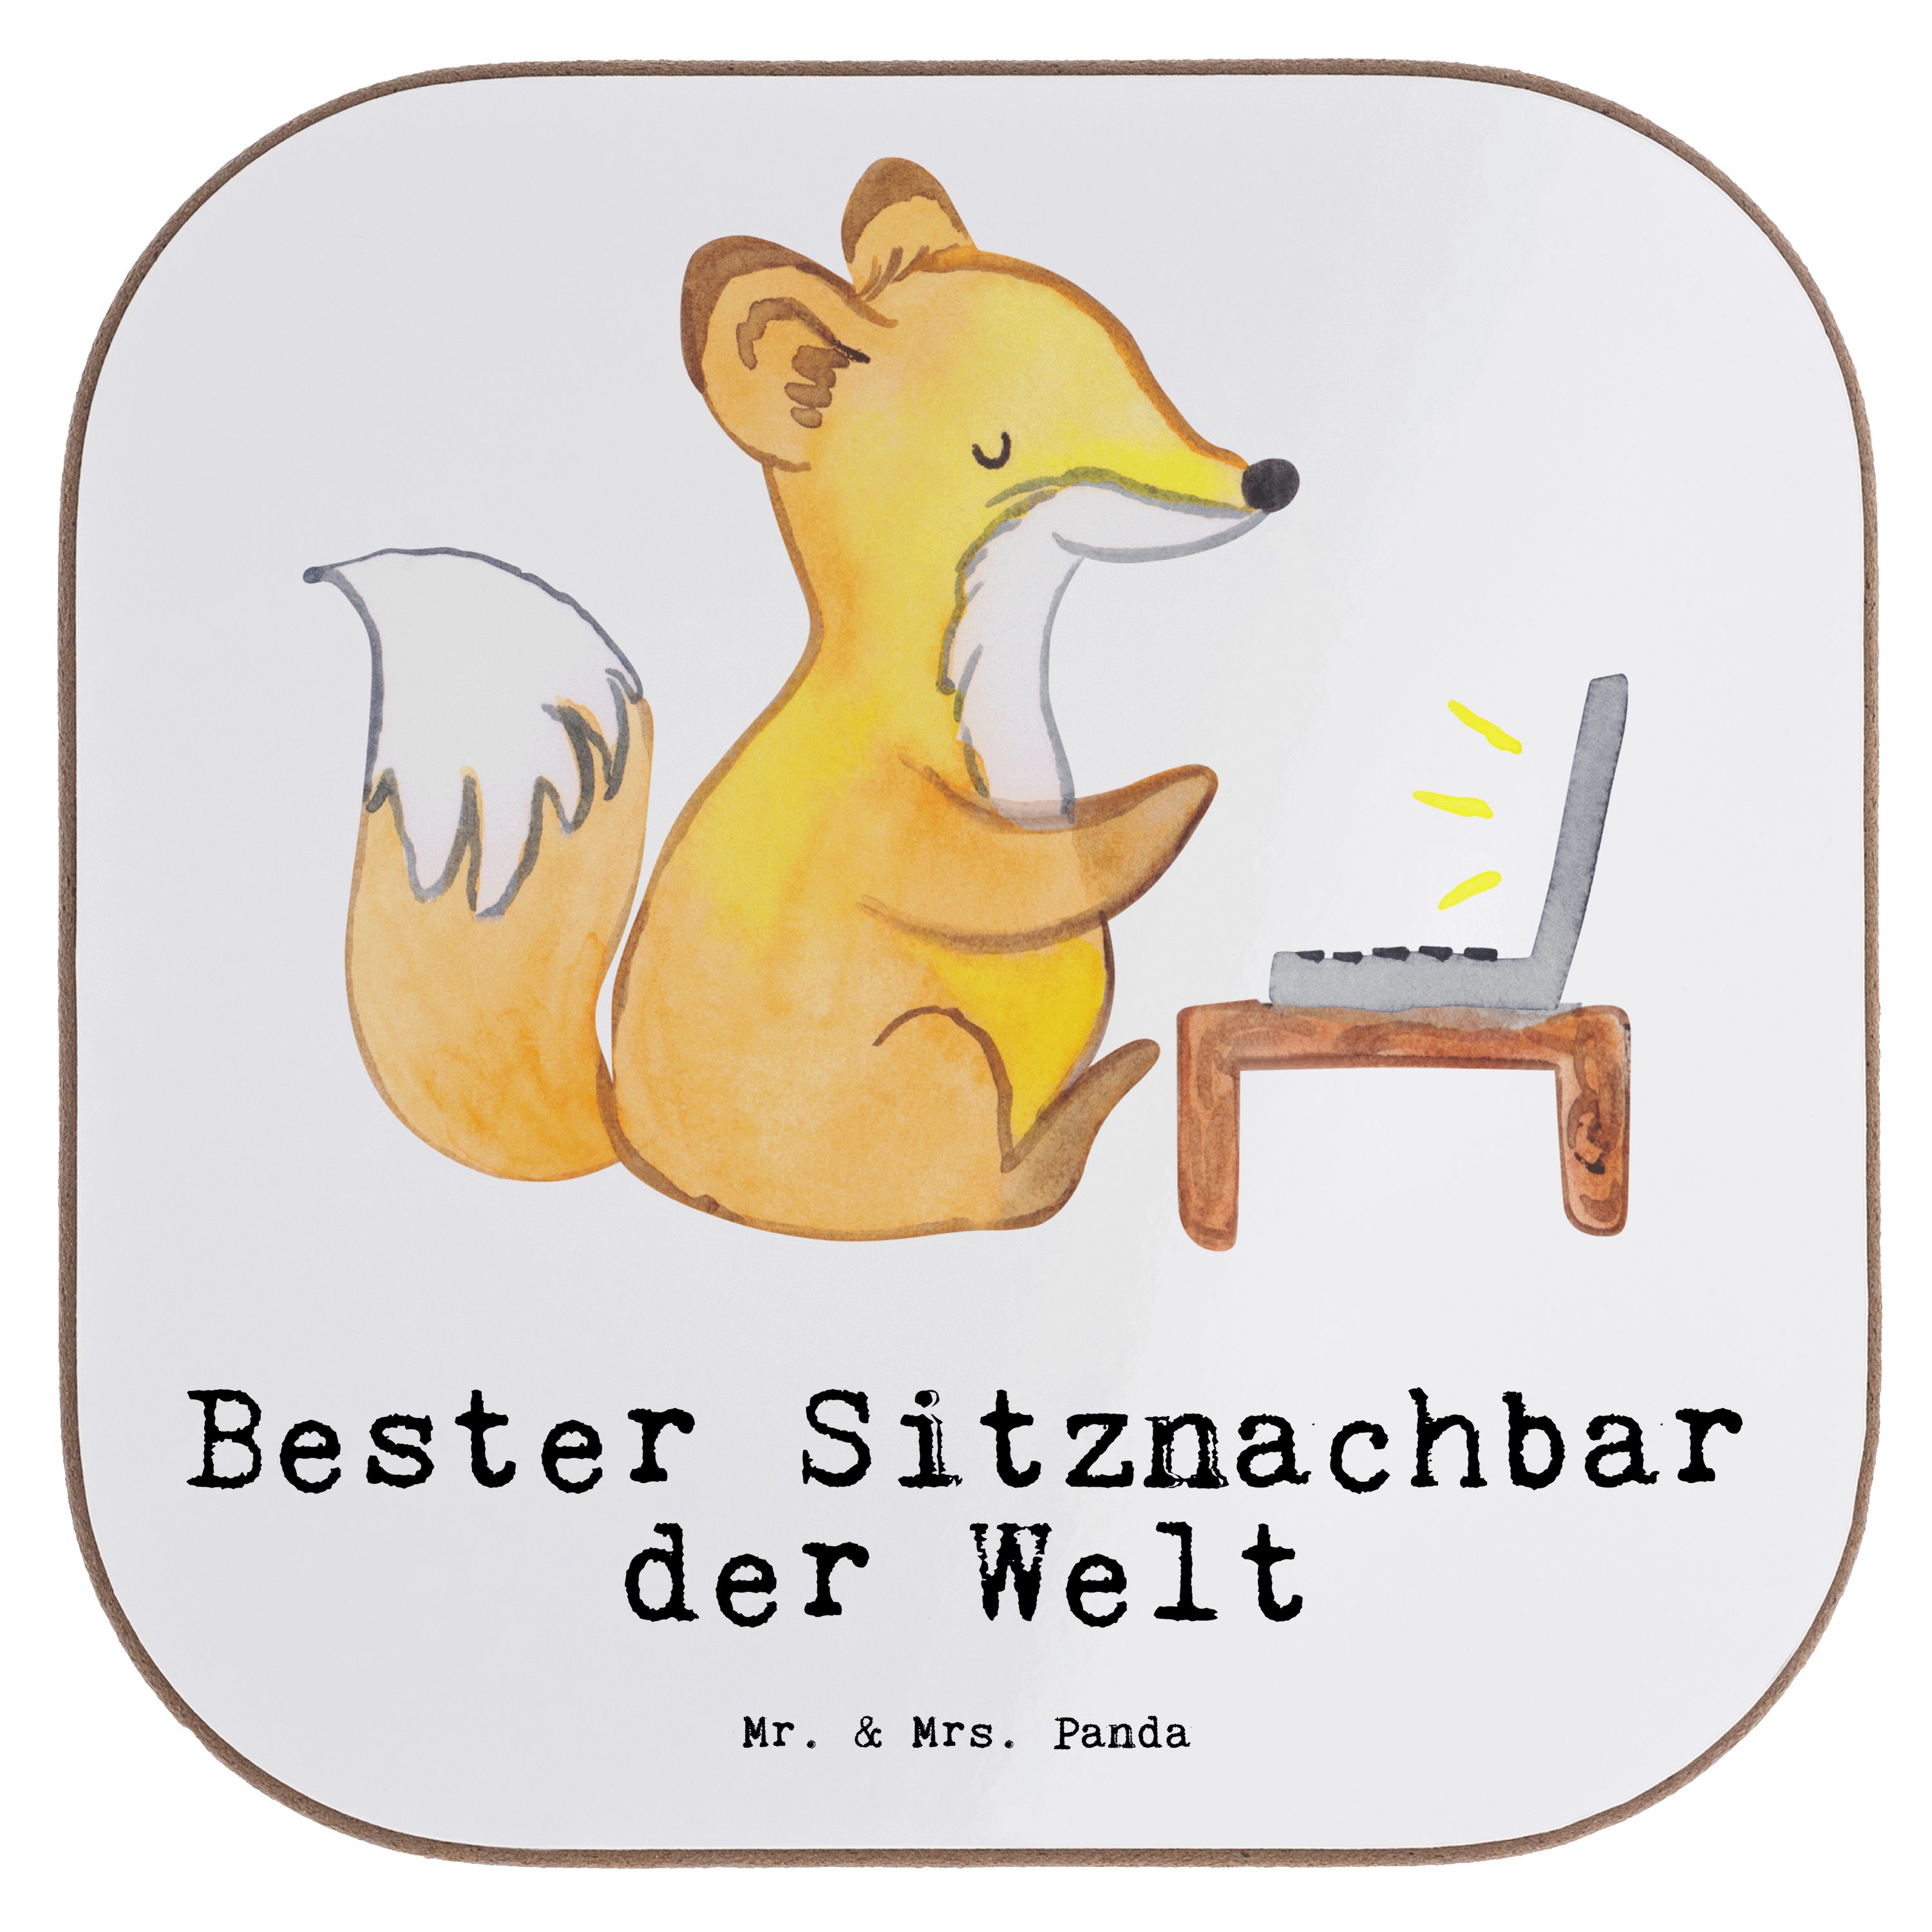 Mr. & Mrs. Panda Getränkeuntersetzer - 1-tlg. Welt Bester Getränkeunterset, der Sitznachbar - Geschenk, Fuchs Weiß